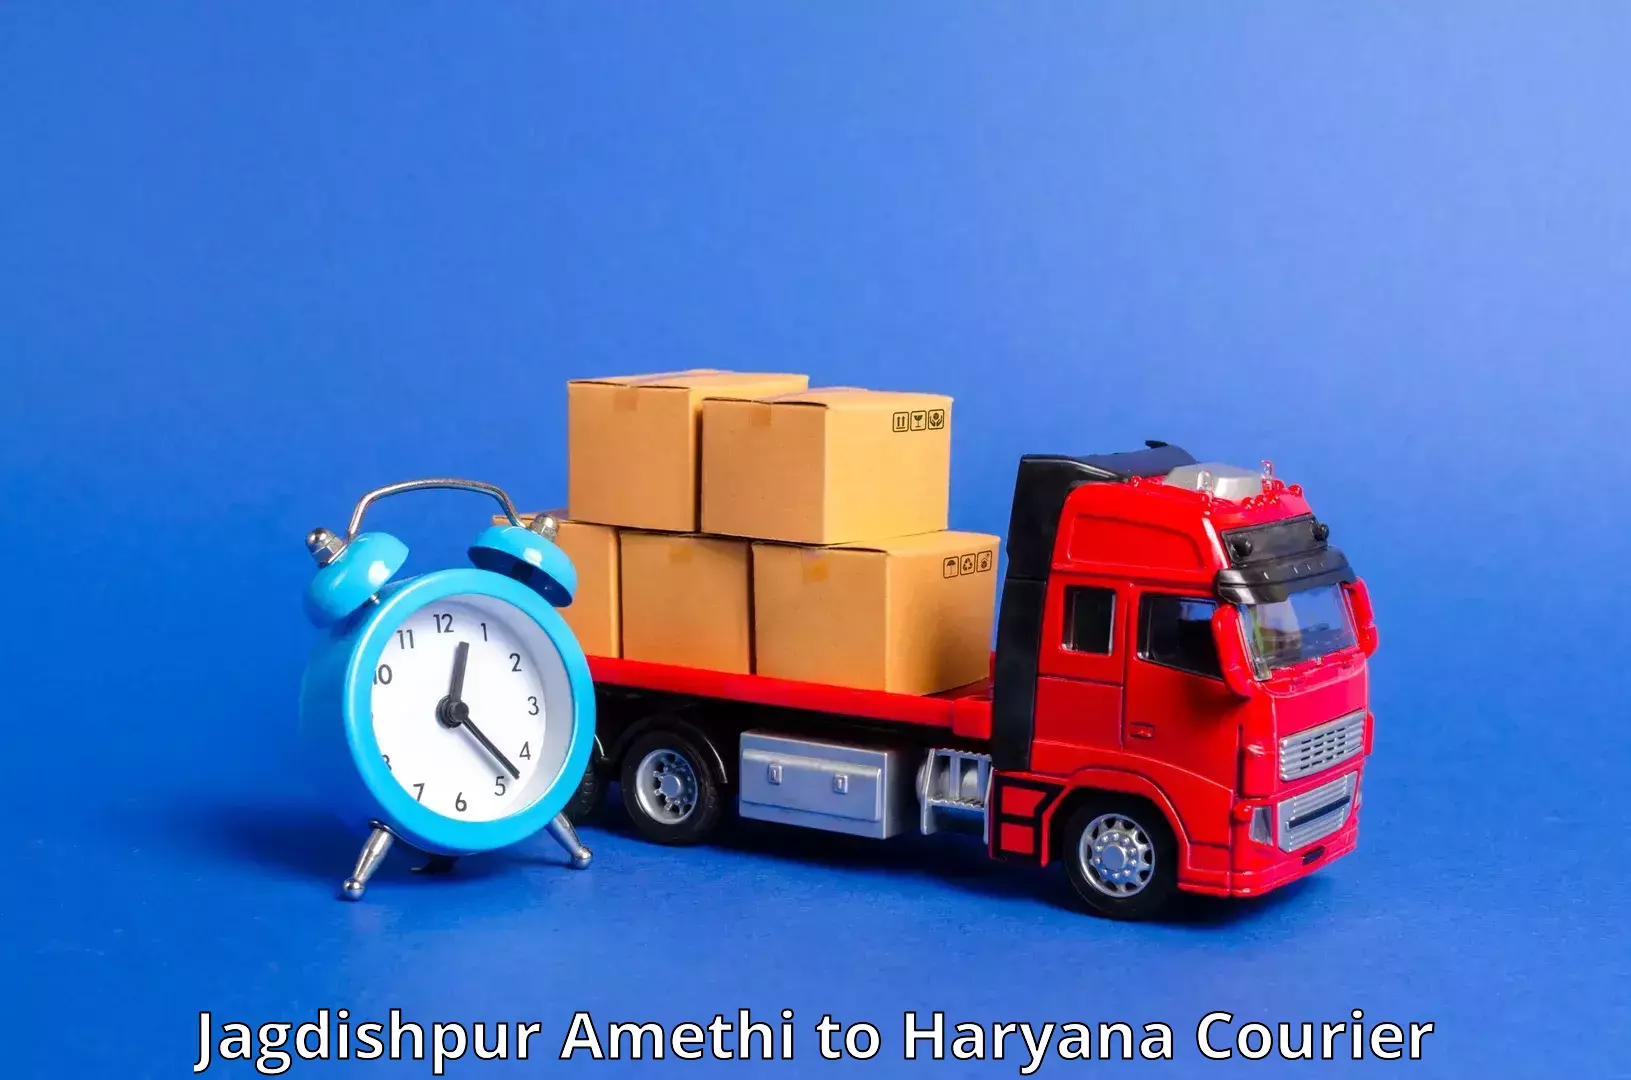 24/7 shipping services Jagdishpur Amethi to Gohana